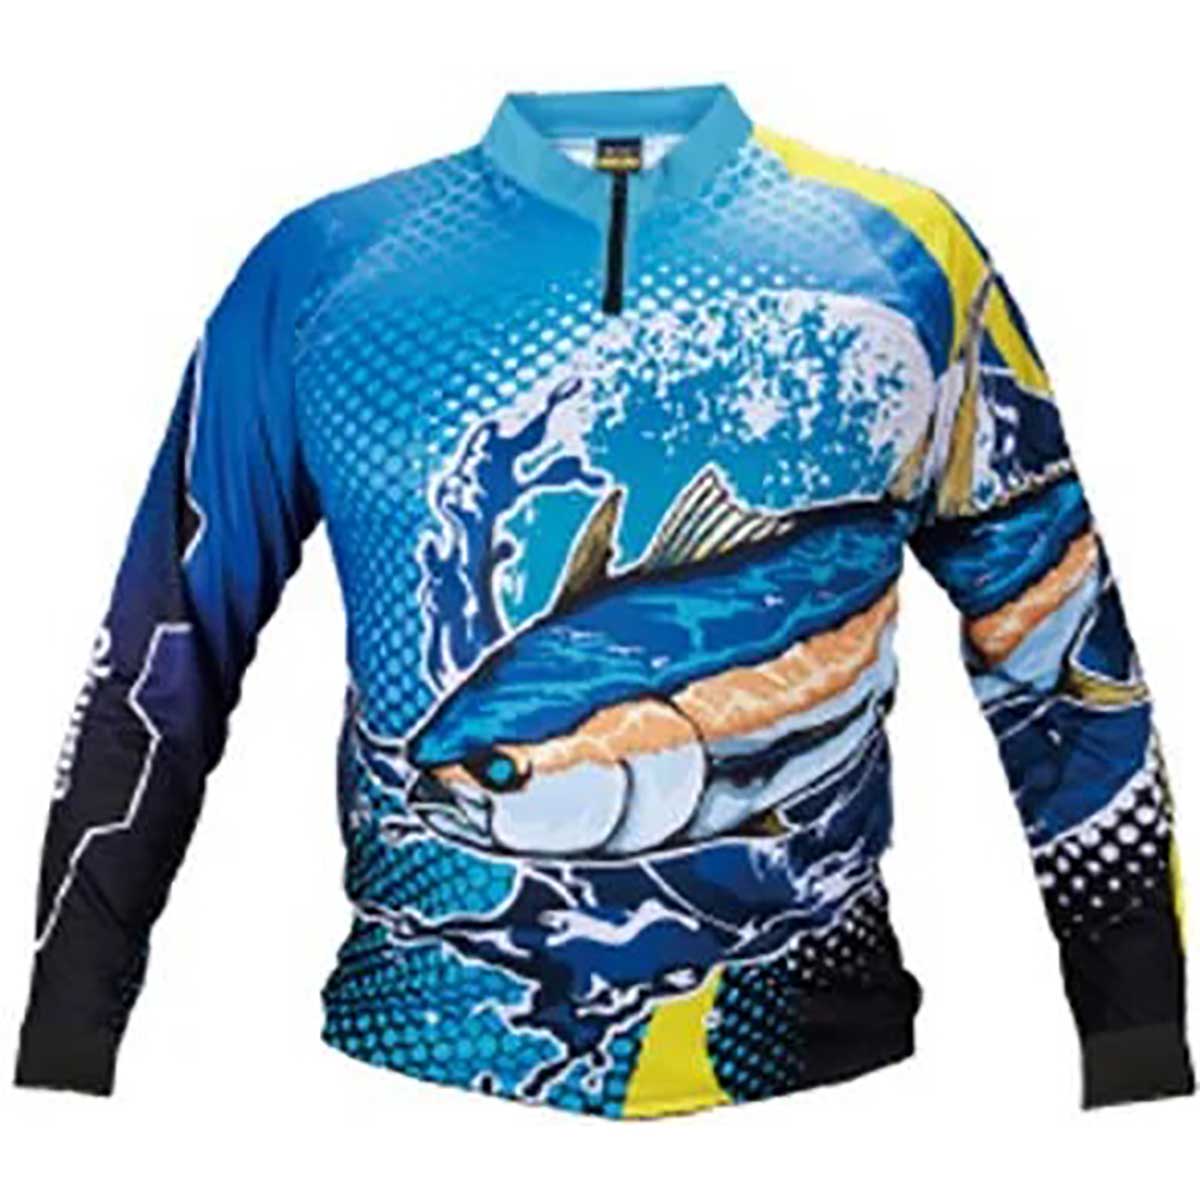 Okuma Tuna Fishing Jersey,okuma markasının turnuva avları için sporcularına özel olarak üretmiş olduğu orkinos desenli uzun kollu sweatshirt serisi